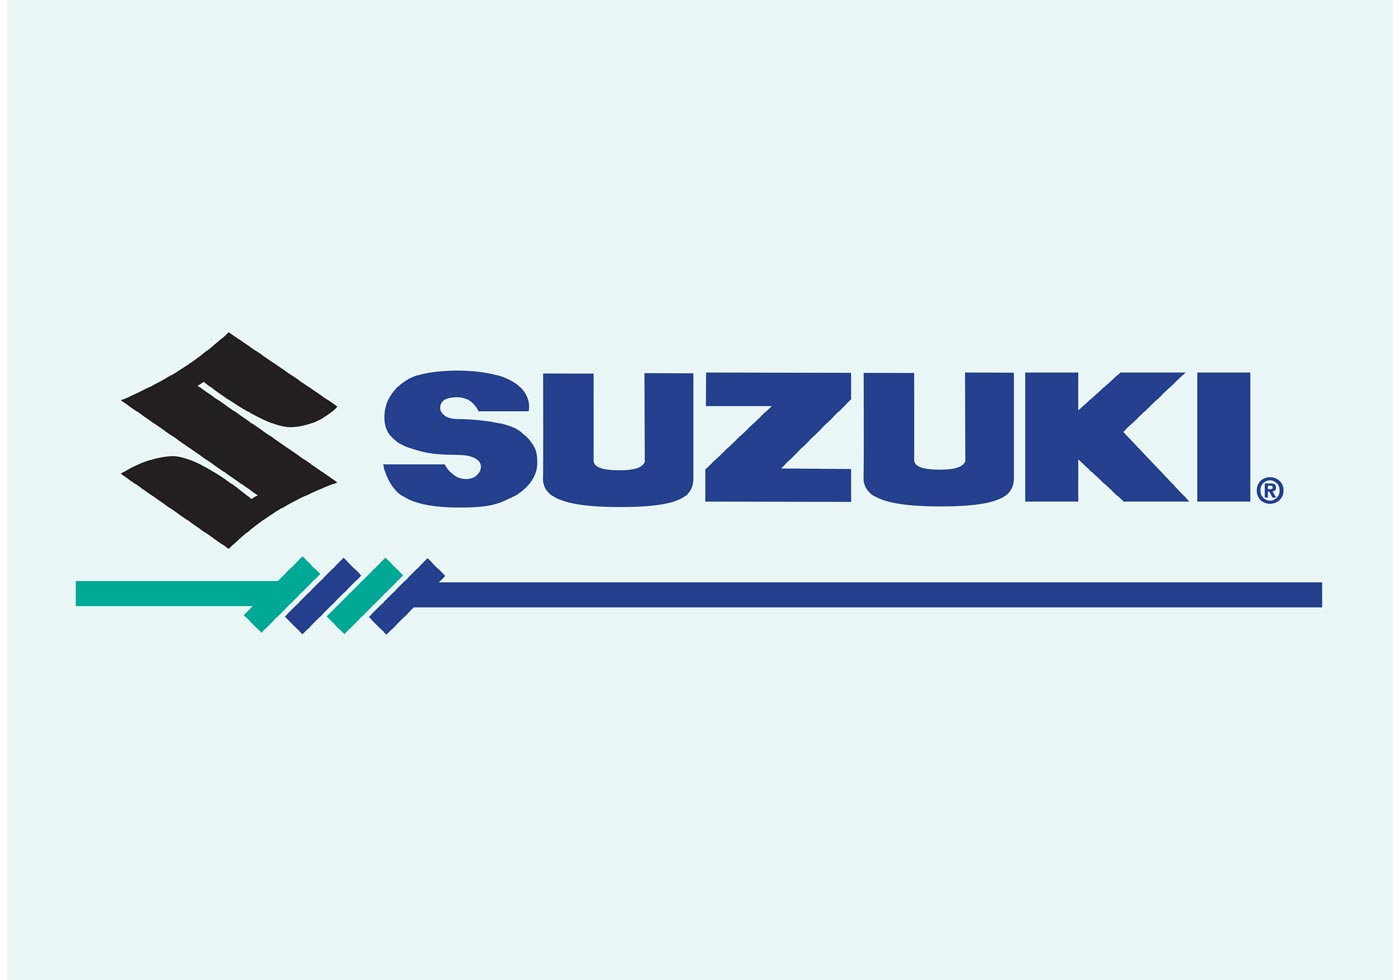 Suzuki Vector Logo 63954 Vector Art at Vecteezy